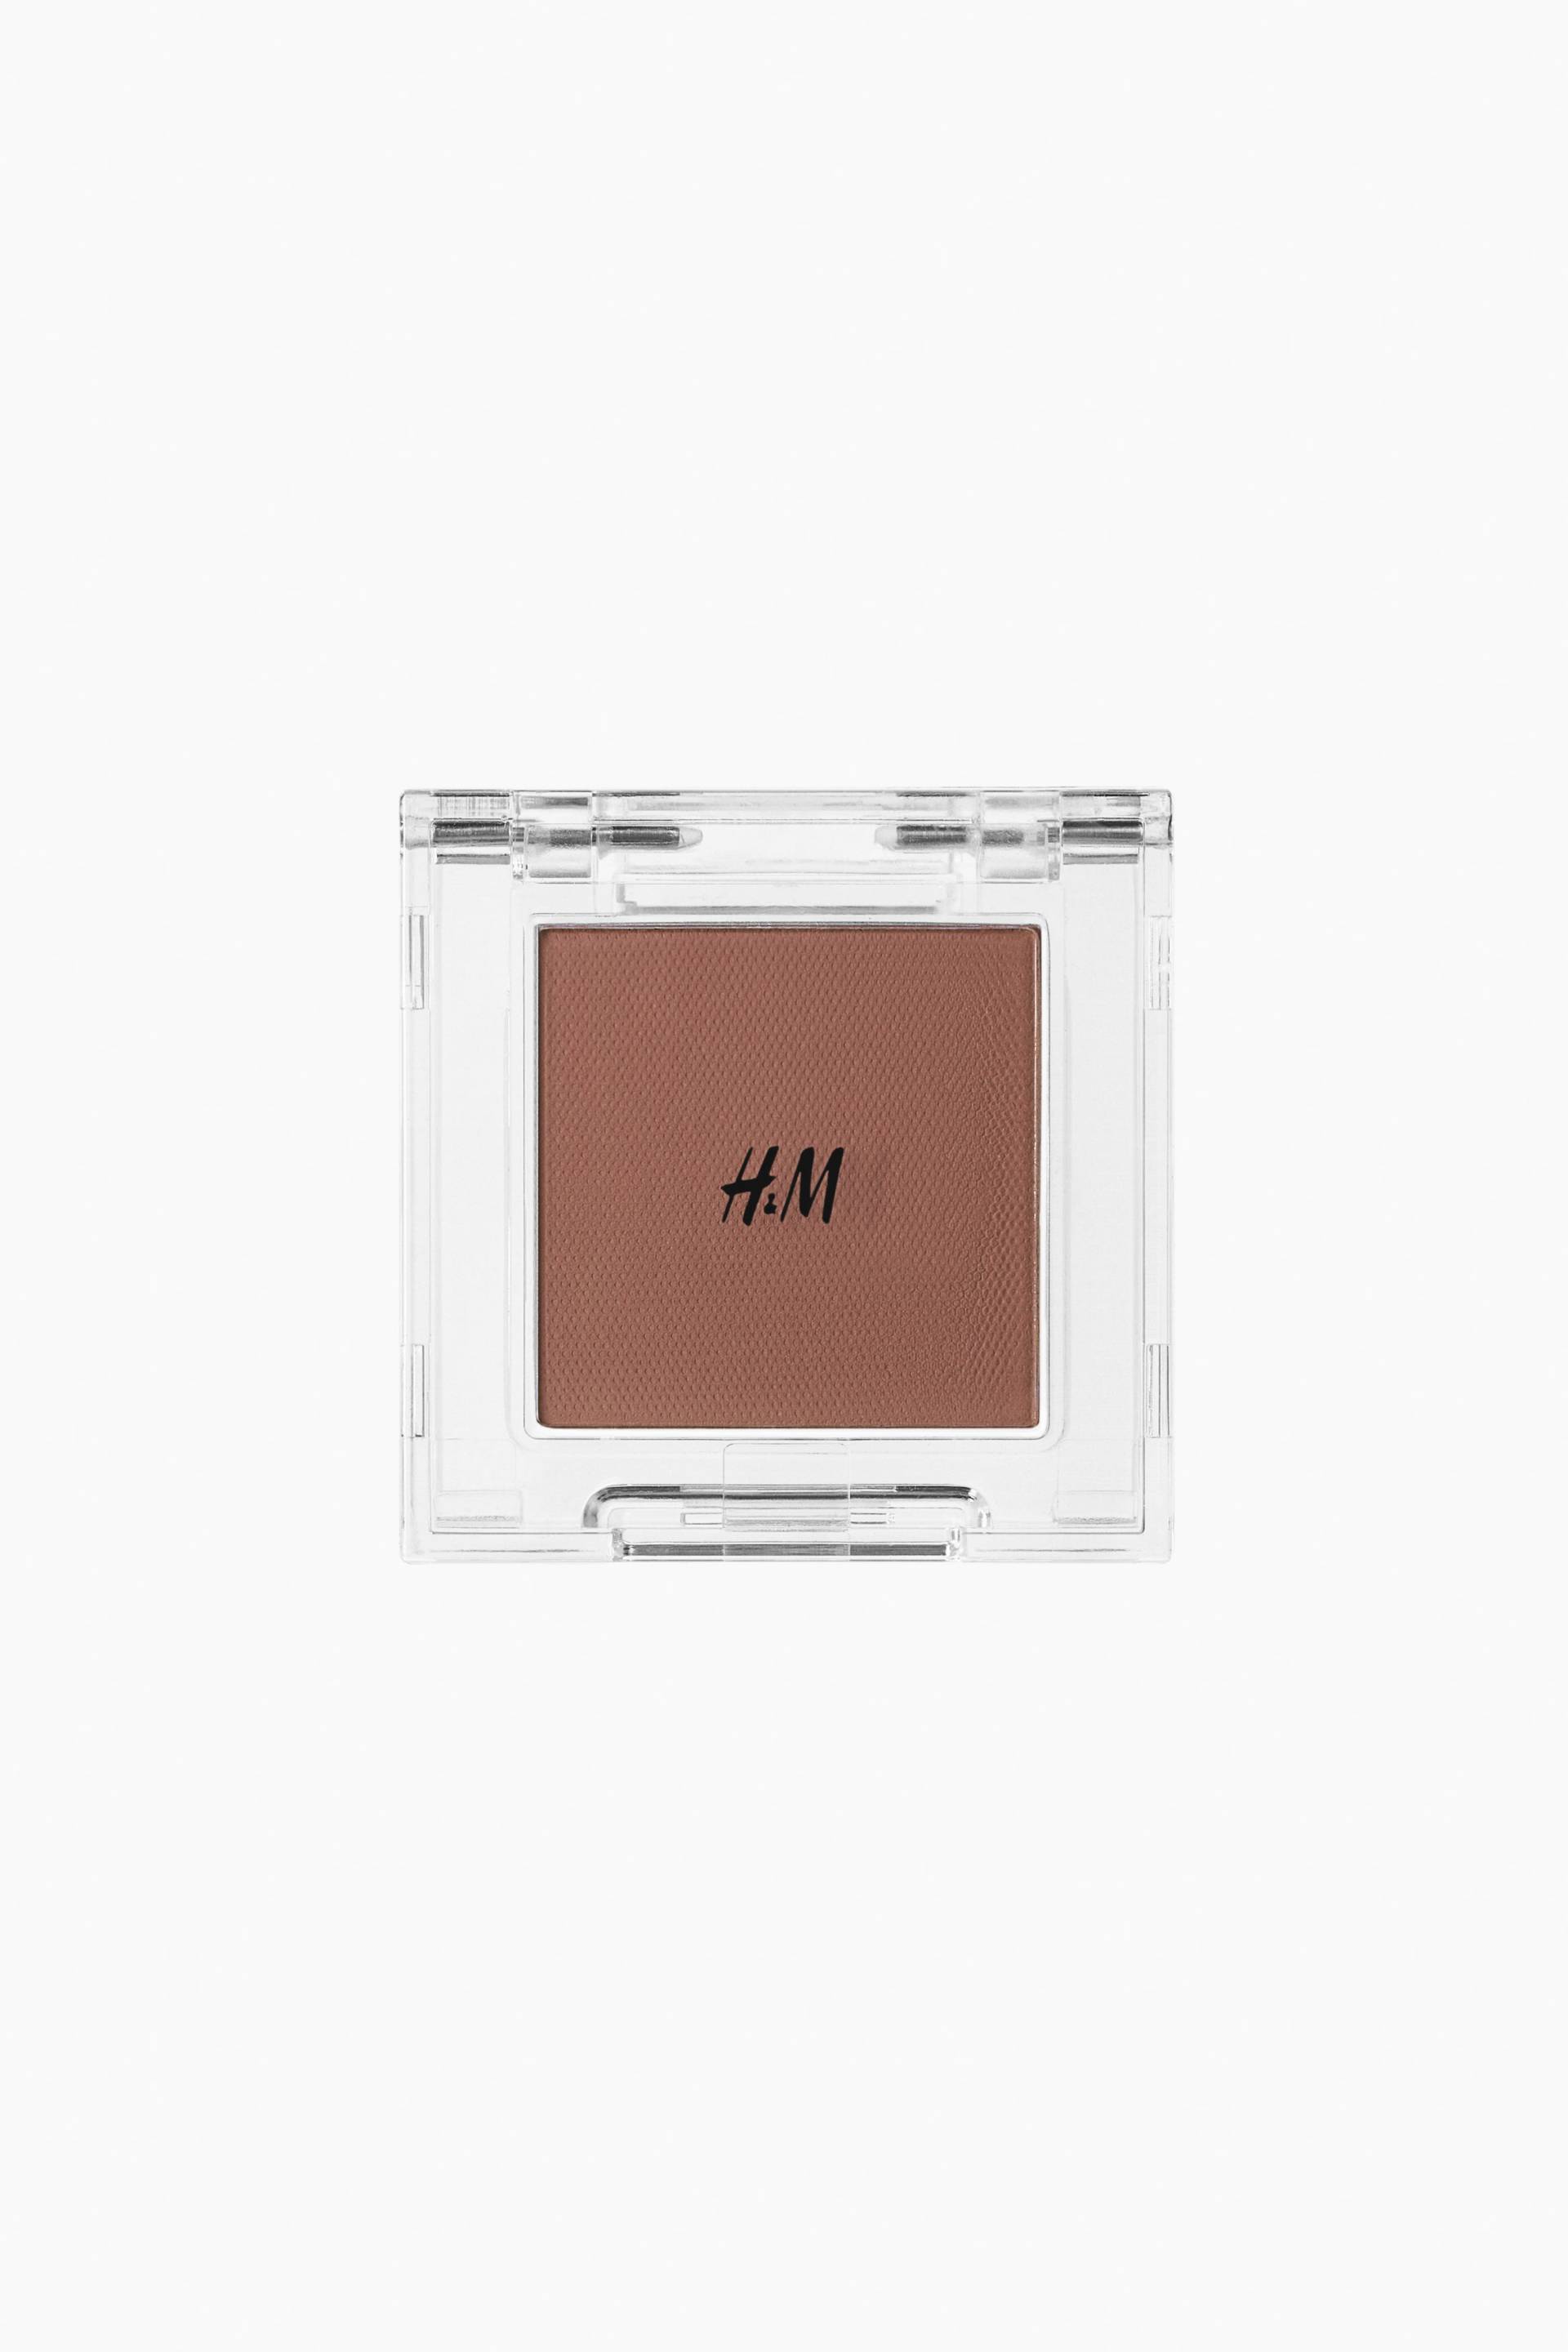 H&M Lidschatten Milk Choc Chip von H&M